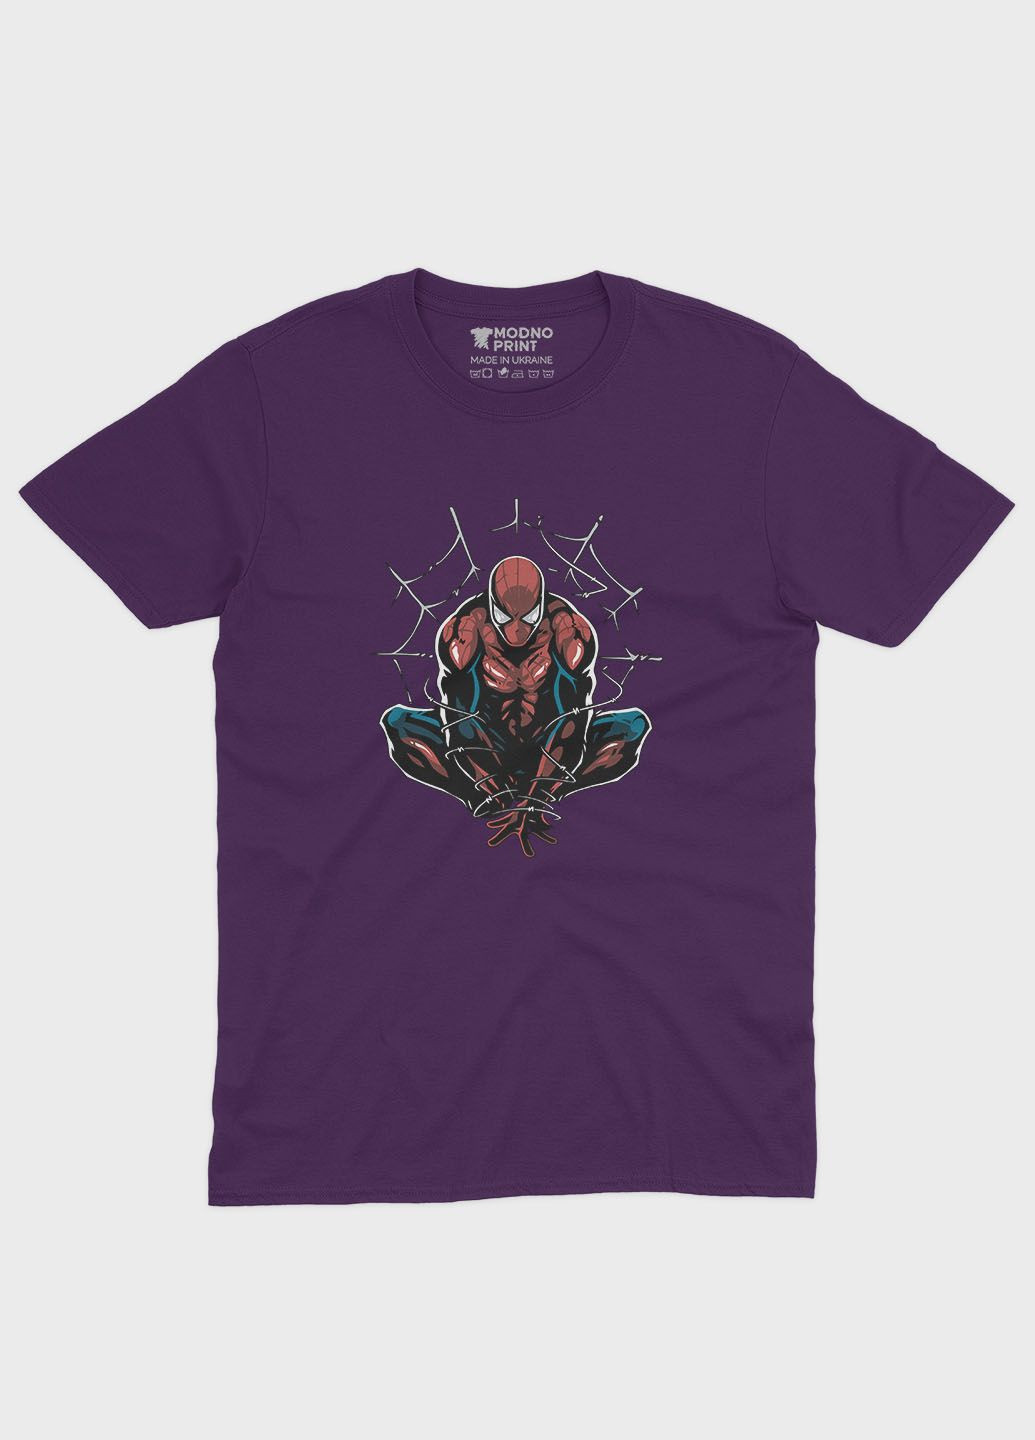 Фіолетова демісезонна футболка для дівчинки з принтом супергероя - людина-павук (ts001-1-dby-006-014-086-g) Modno